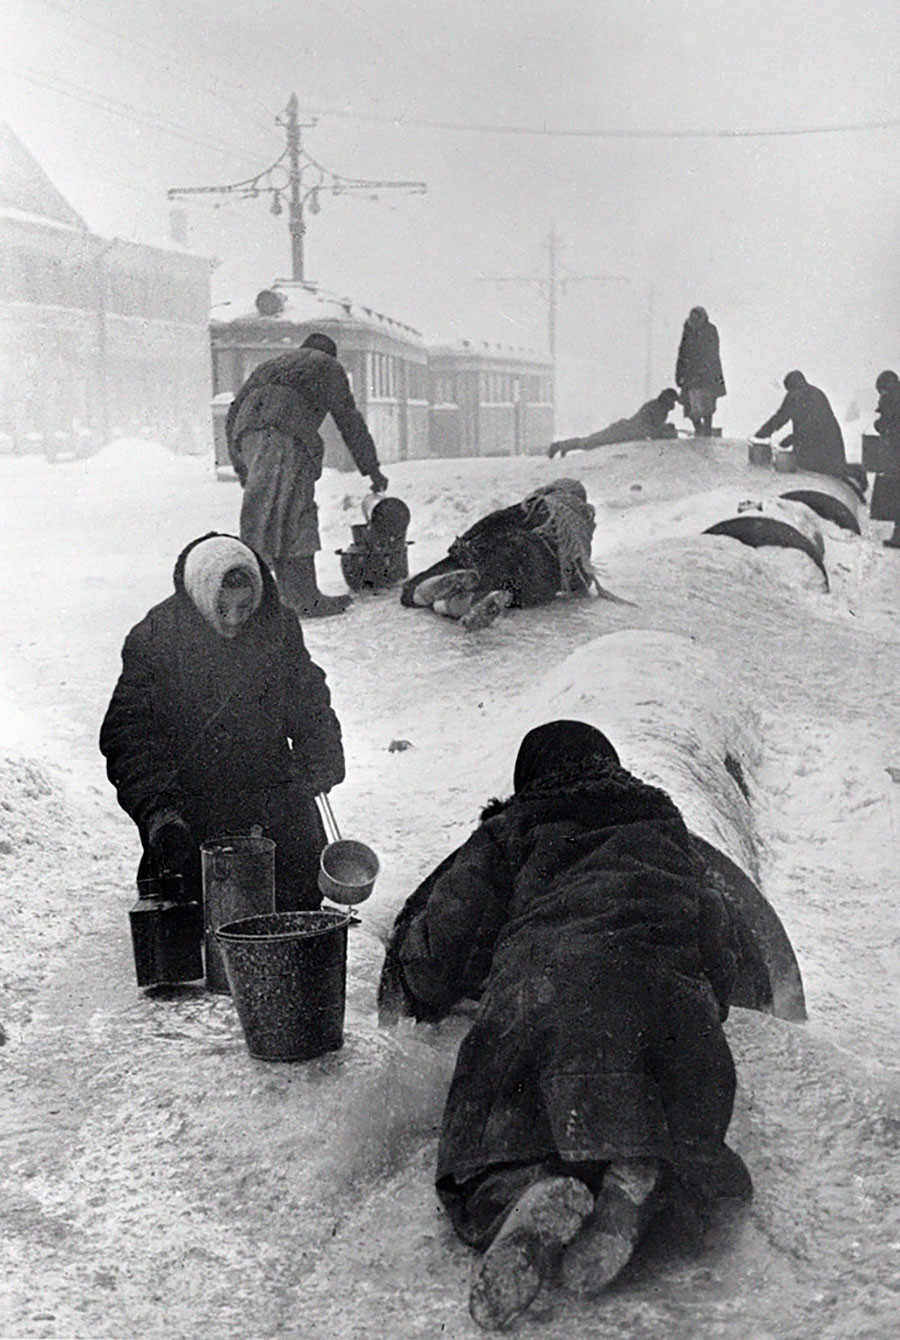 Les habitants de la ville de Leningrad remplissent leurs seaux depuis une conduite endommagée par une journée glaciale, janvier 1942.